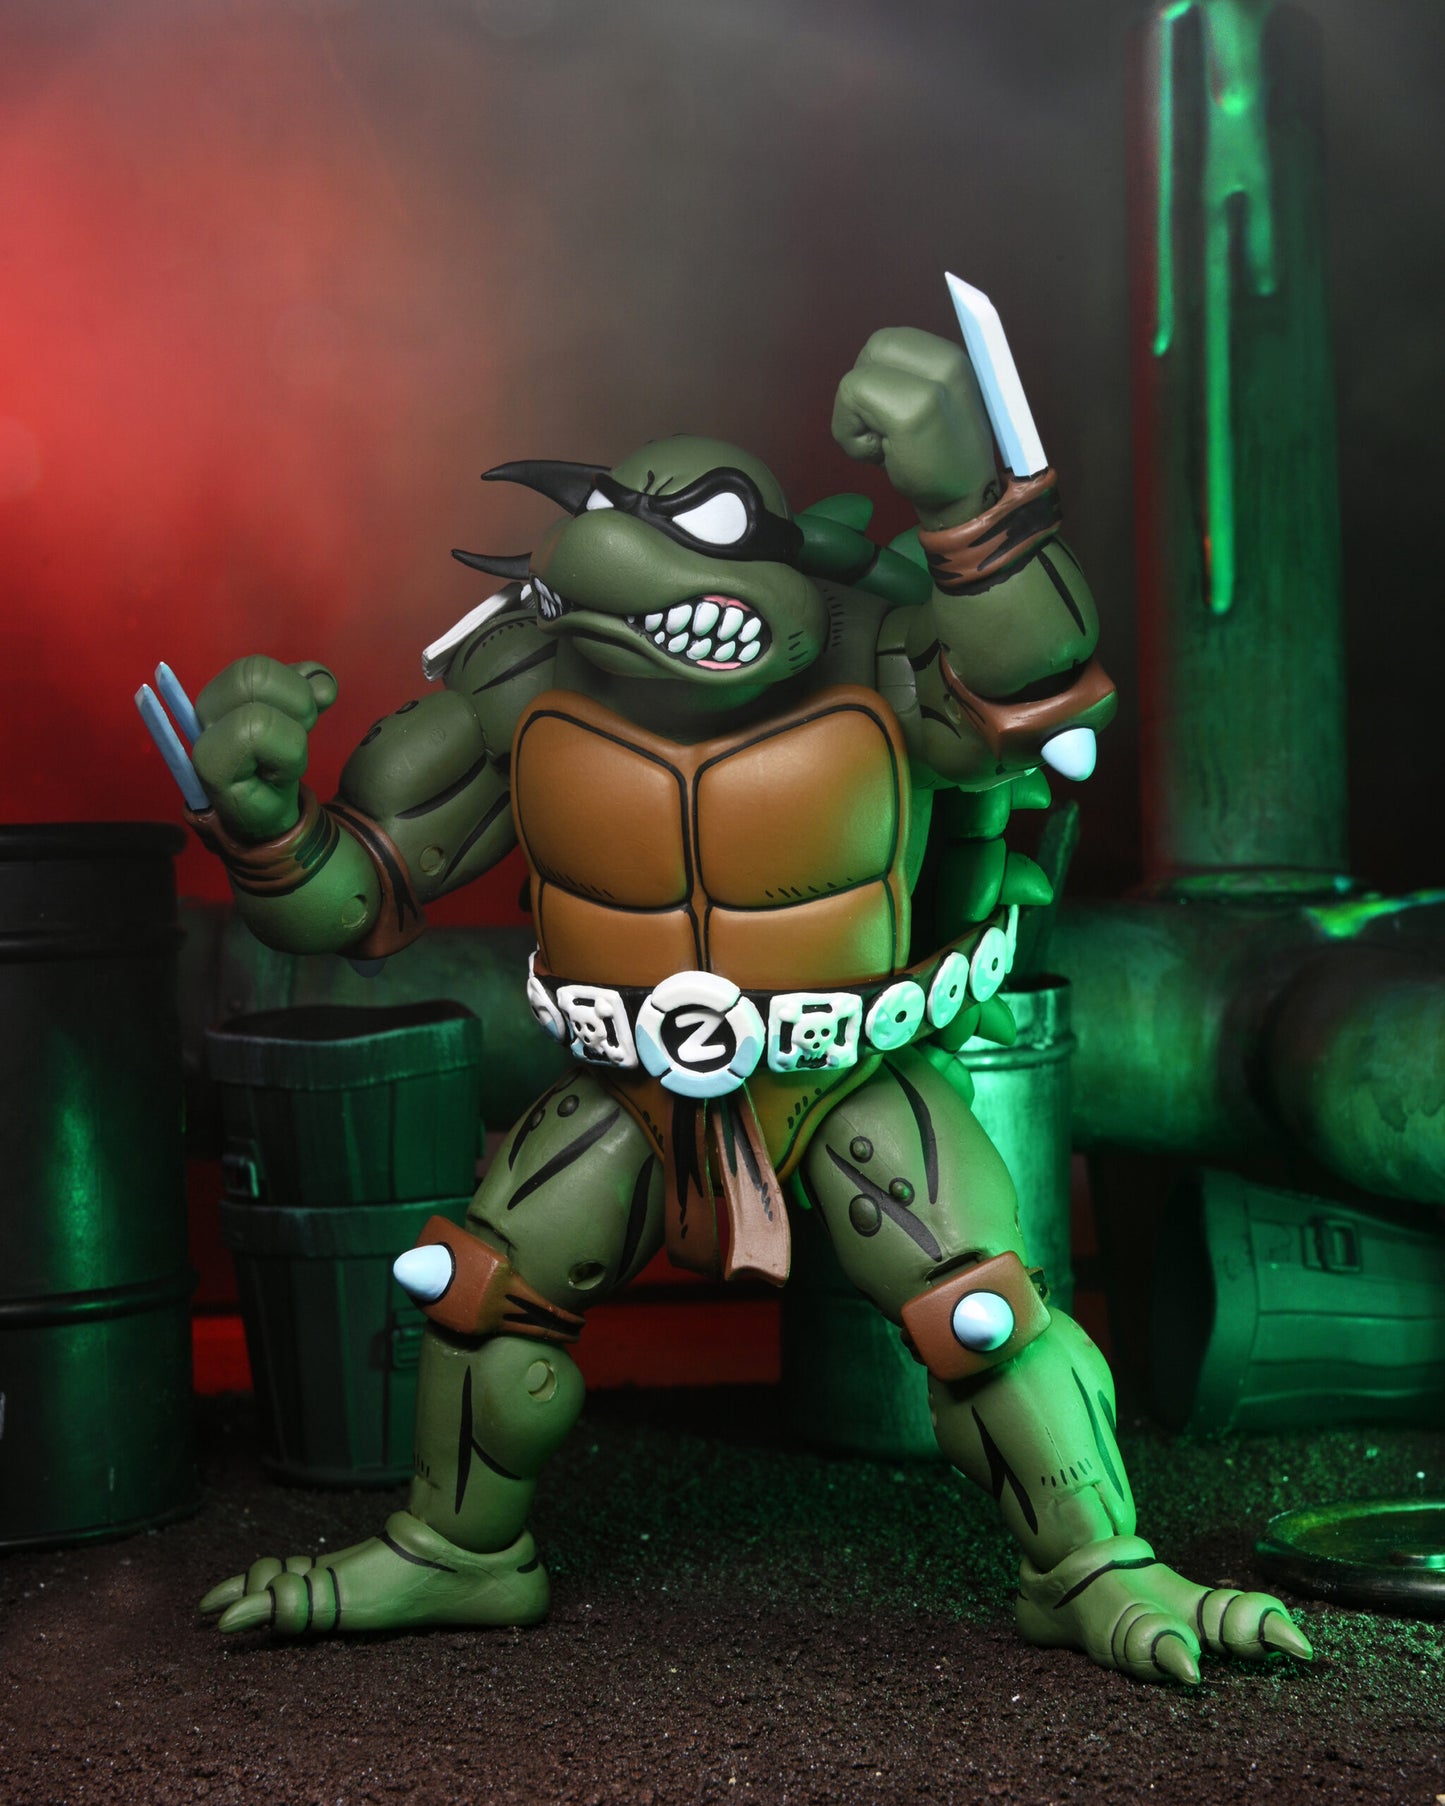 Teenage Mutant Ninja Turtles (Archie Comics) 7” Scale Action Figure – Slash